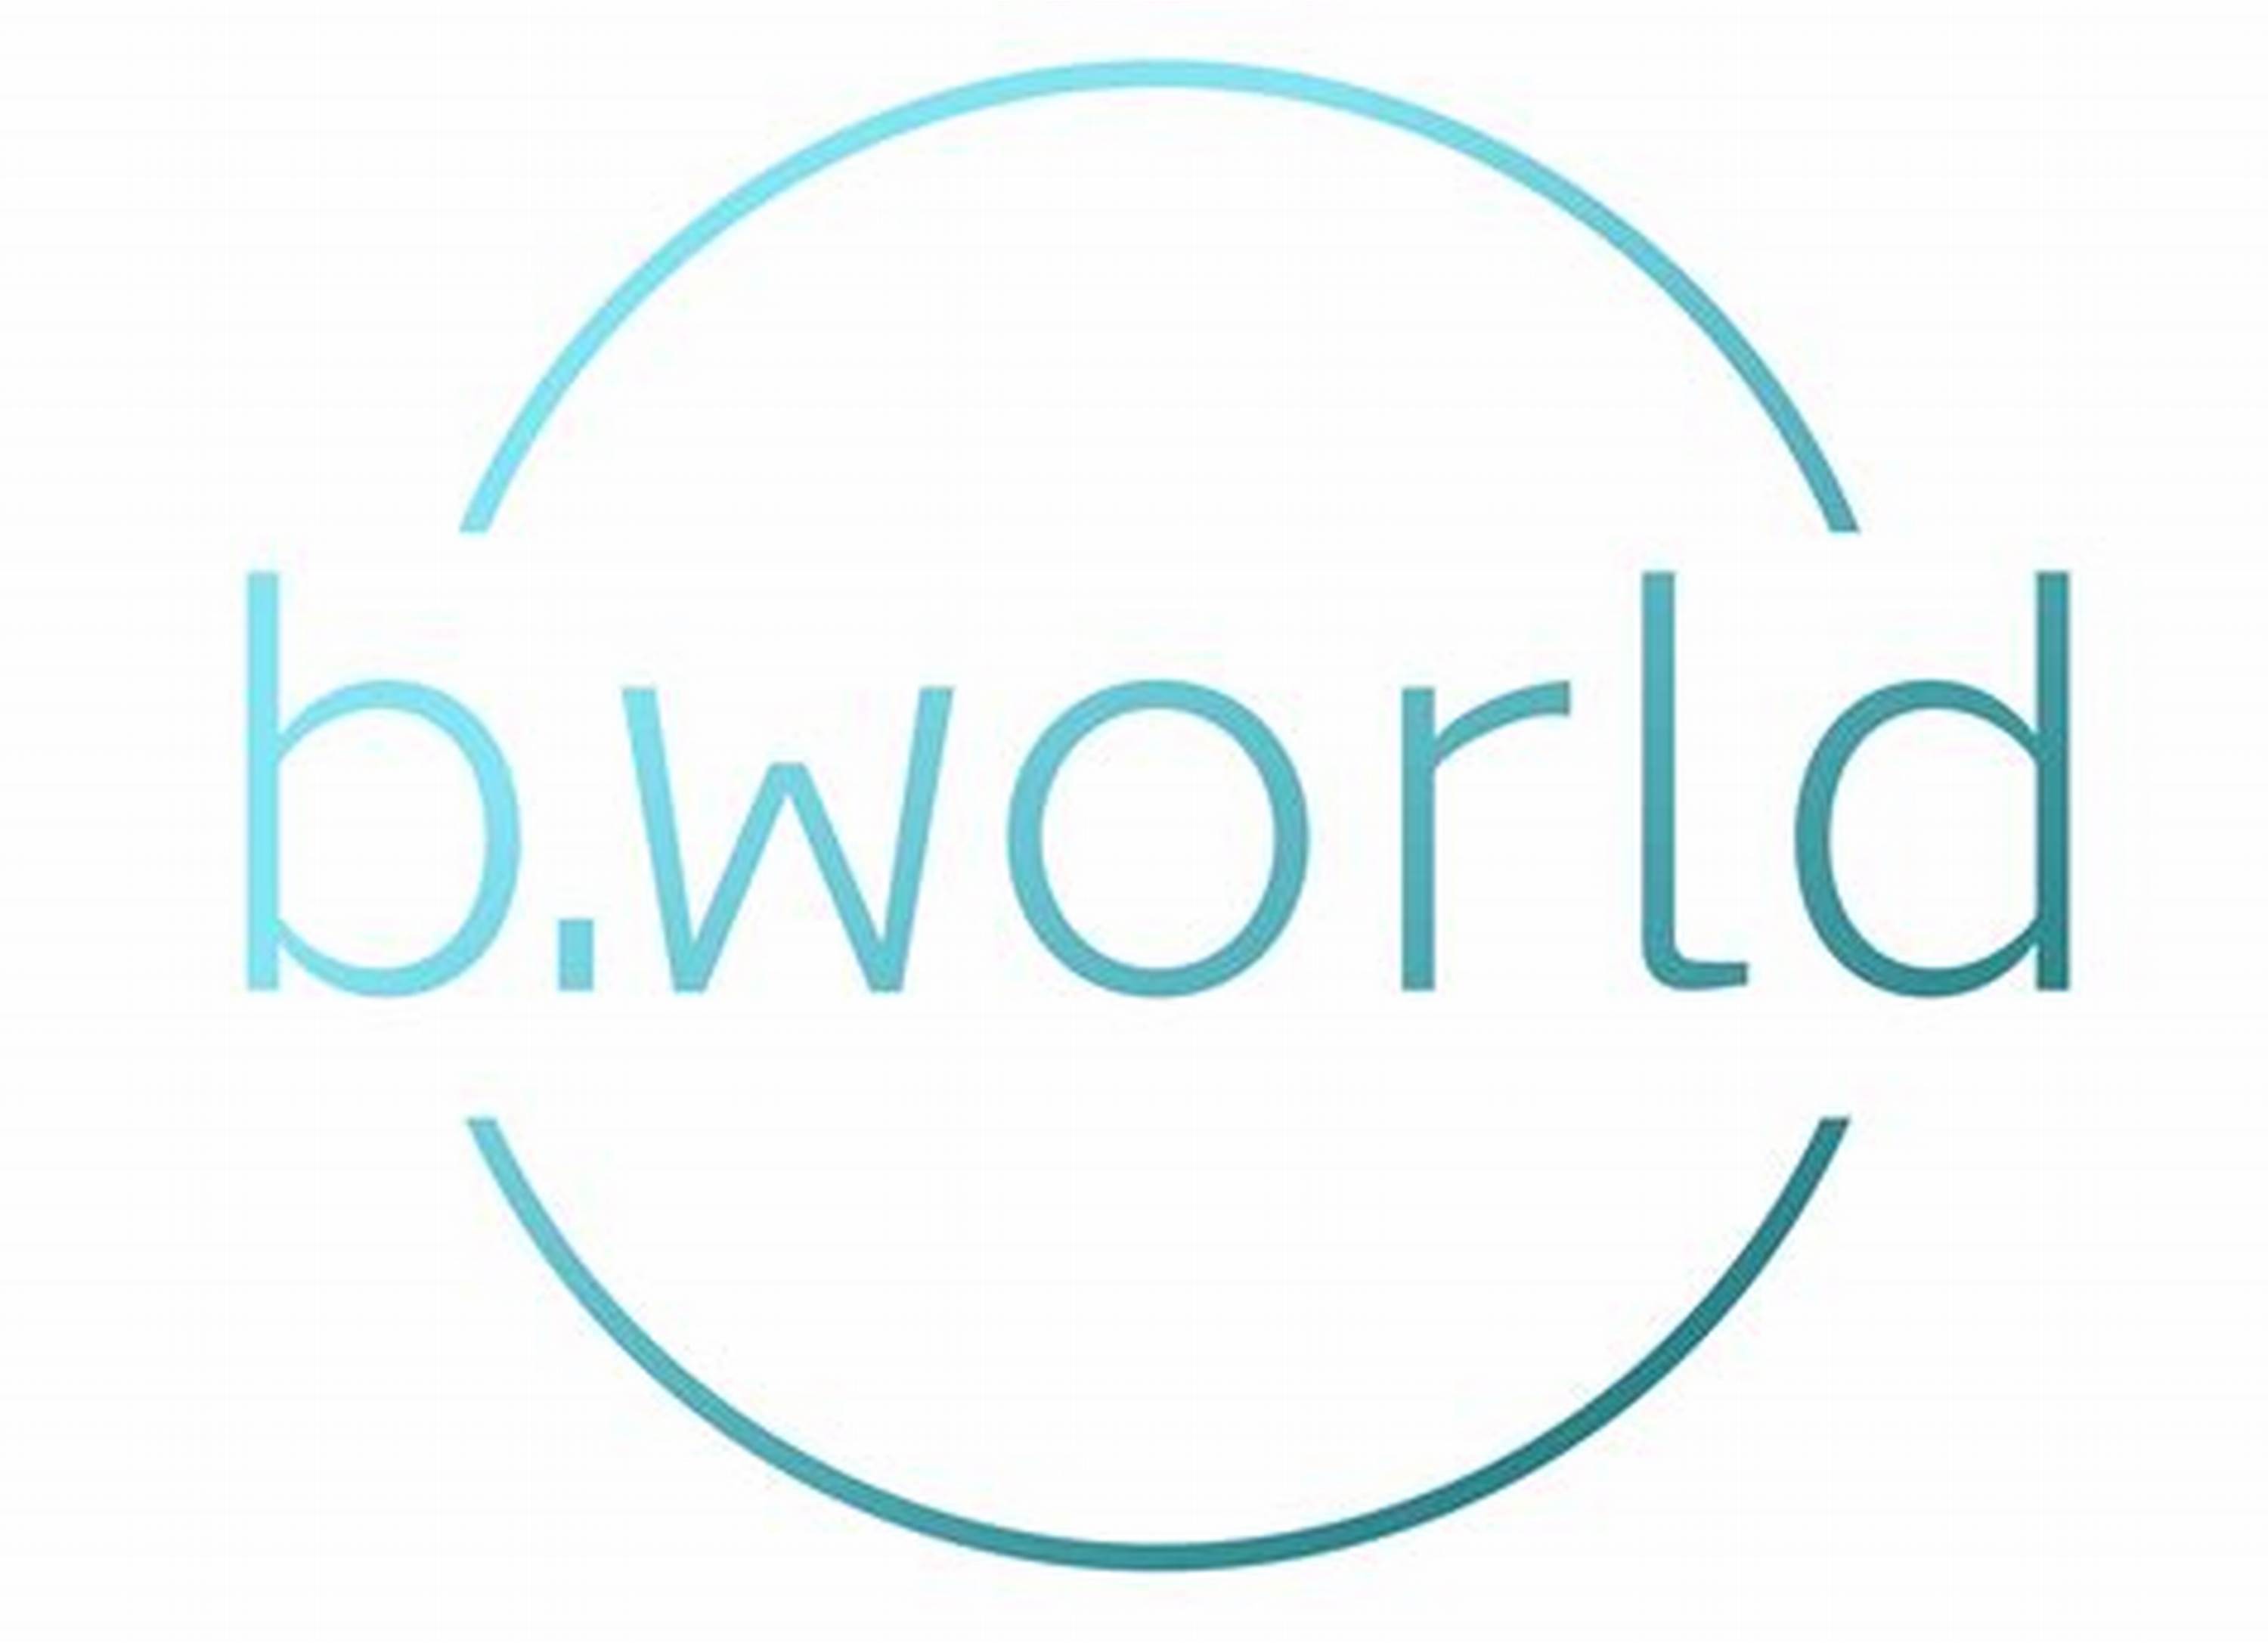 b.world (logo)